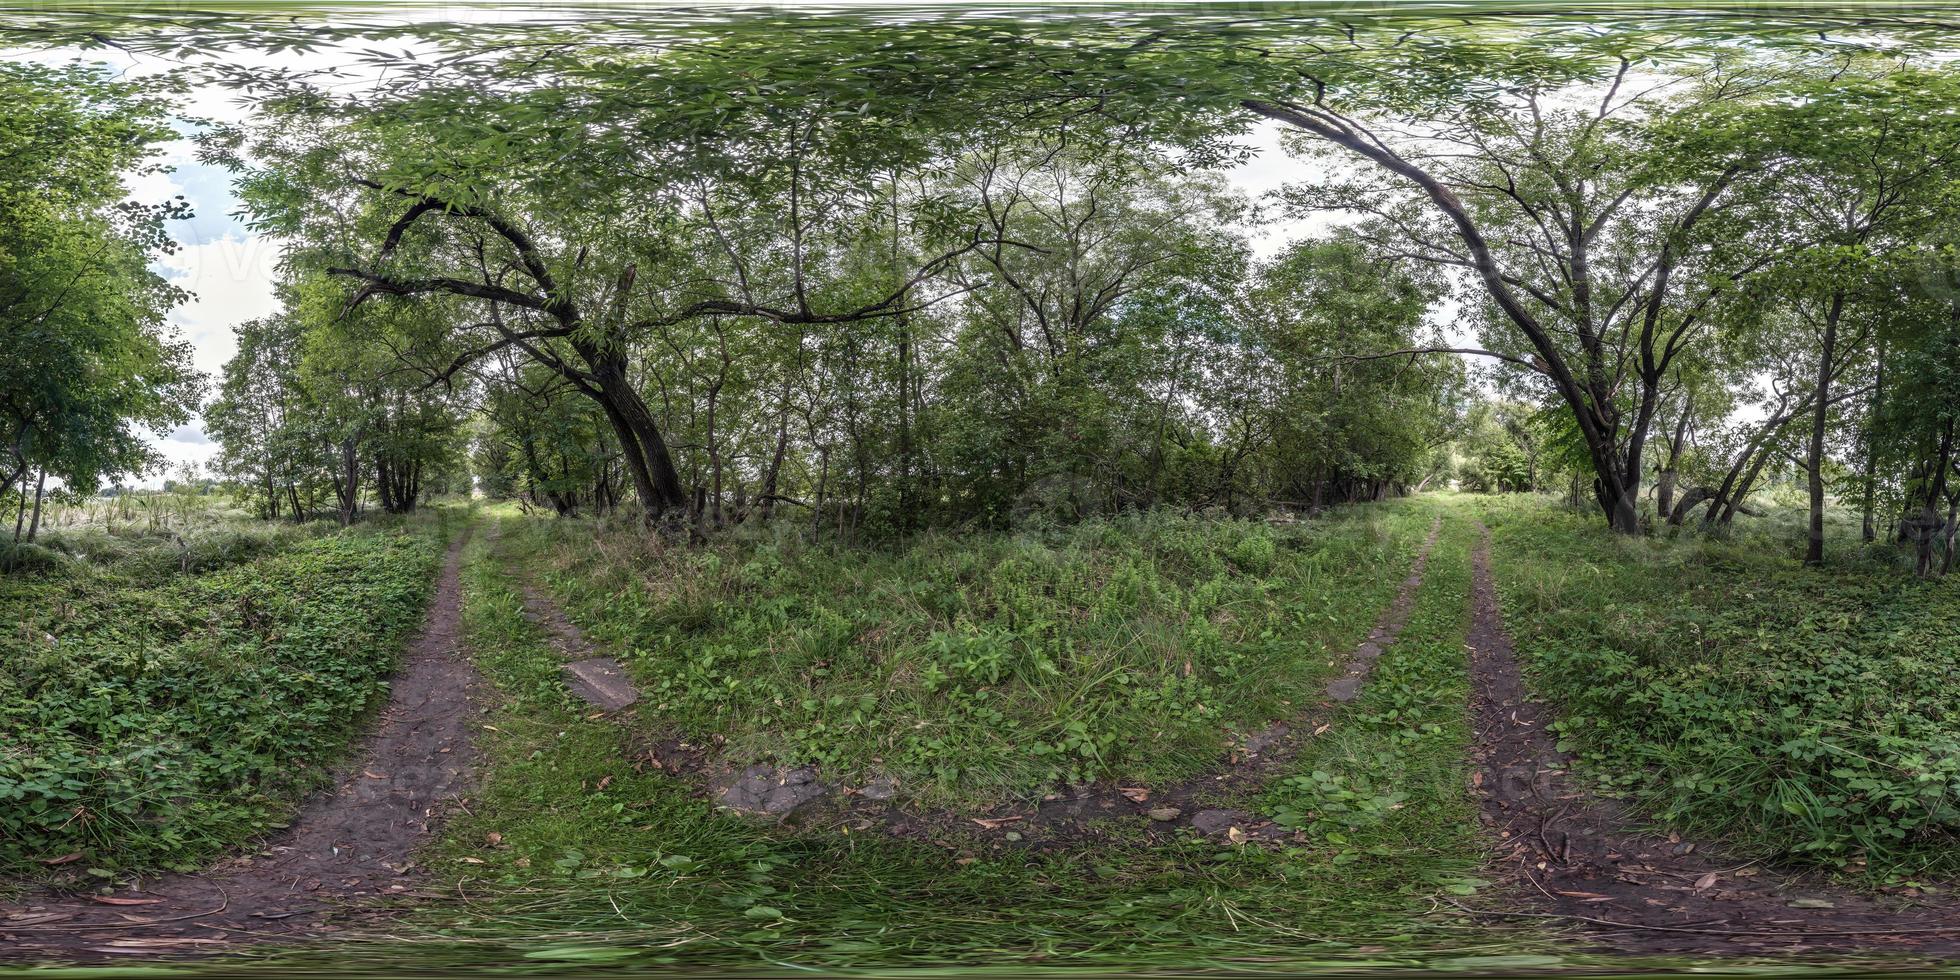 visão panorâmica hdri 360 esférica completa e sem costura no caminho de caminhada para pedestres e ciclistas entre os arbustos da floresta em projeção equiretangular, conteúdo de realidade virtual vr ar pronto foto